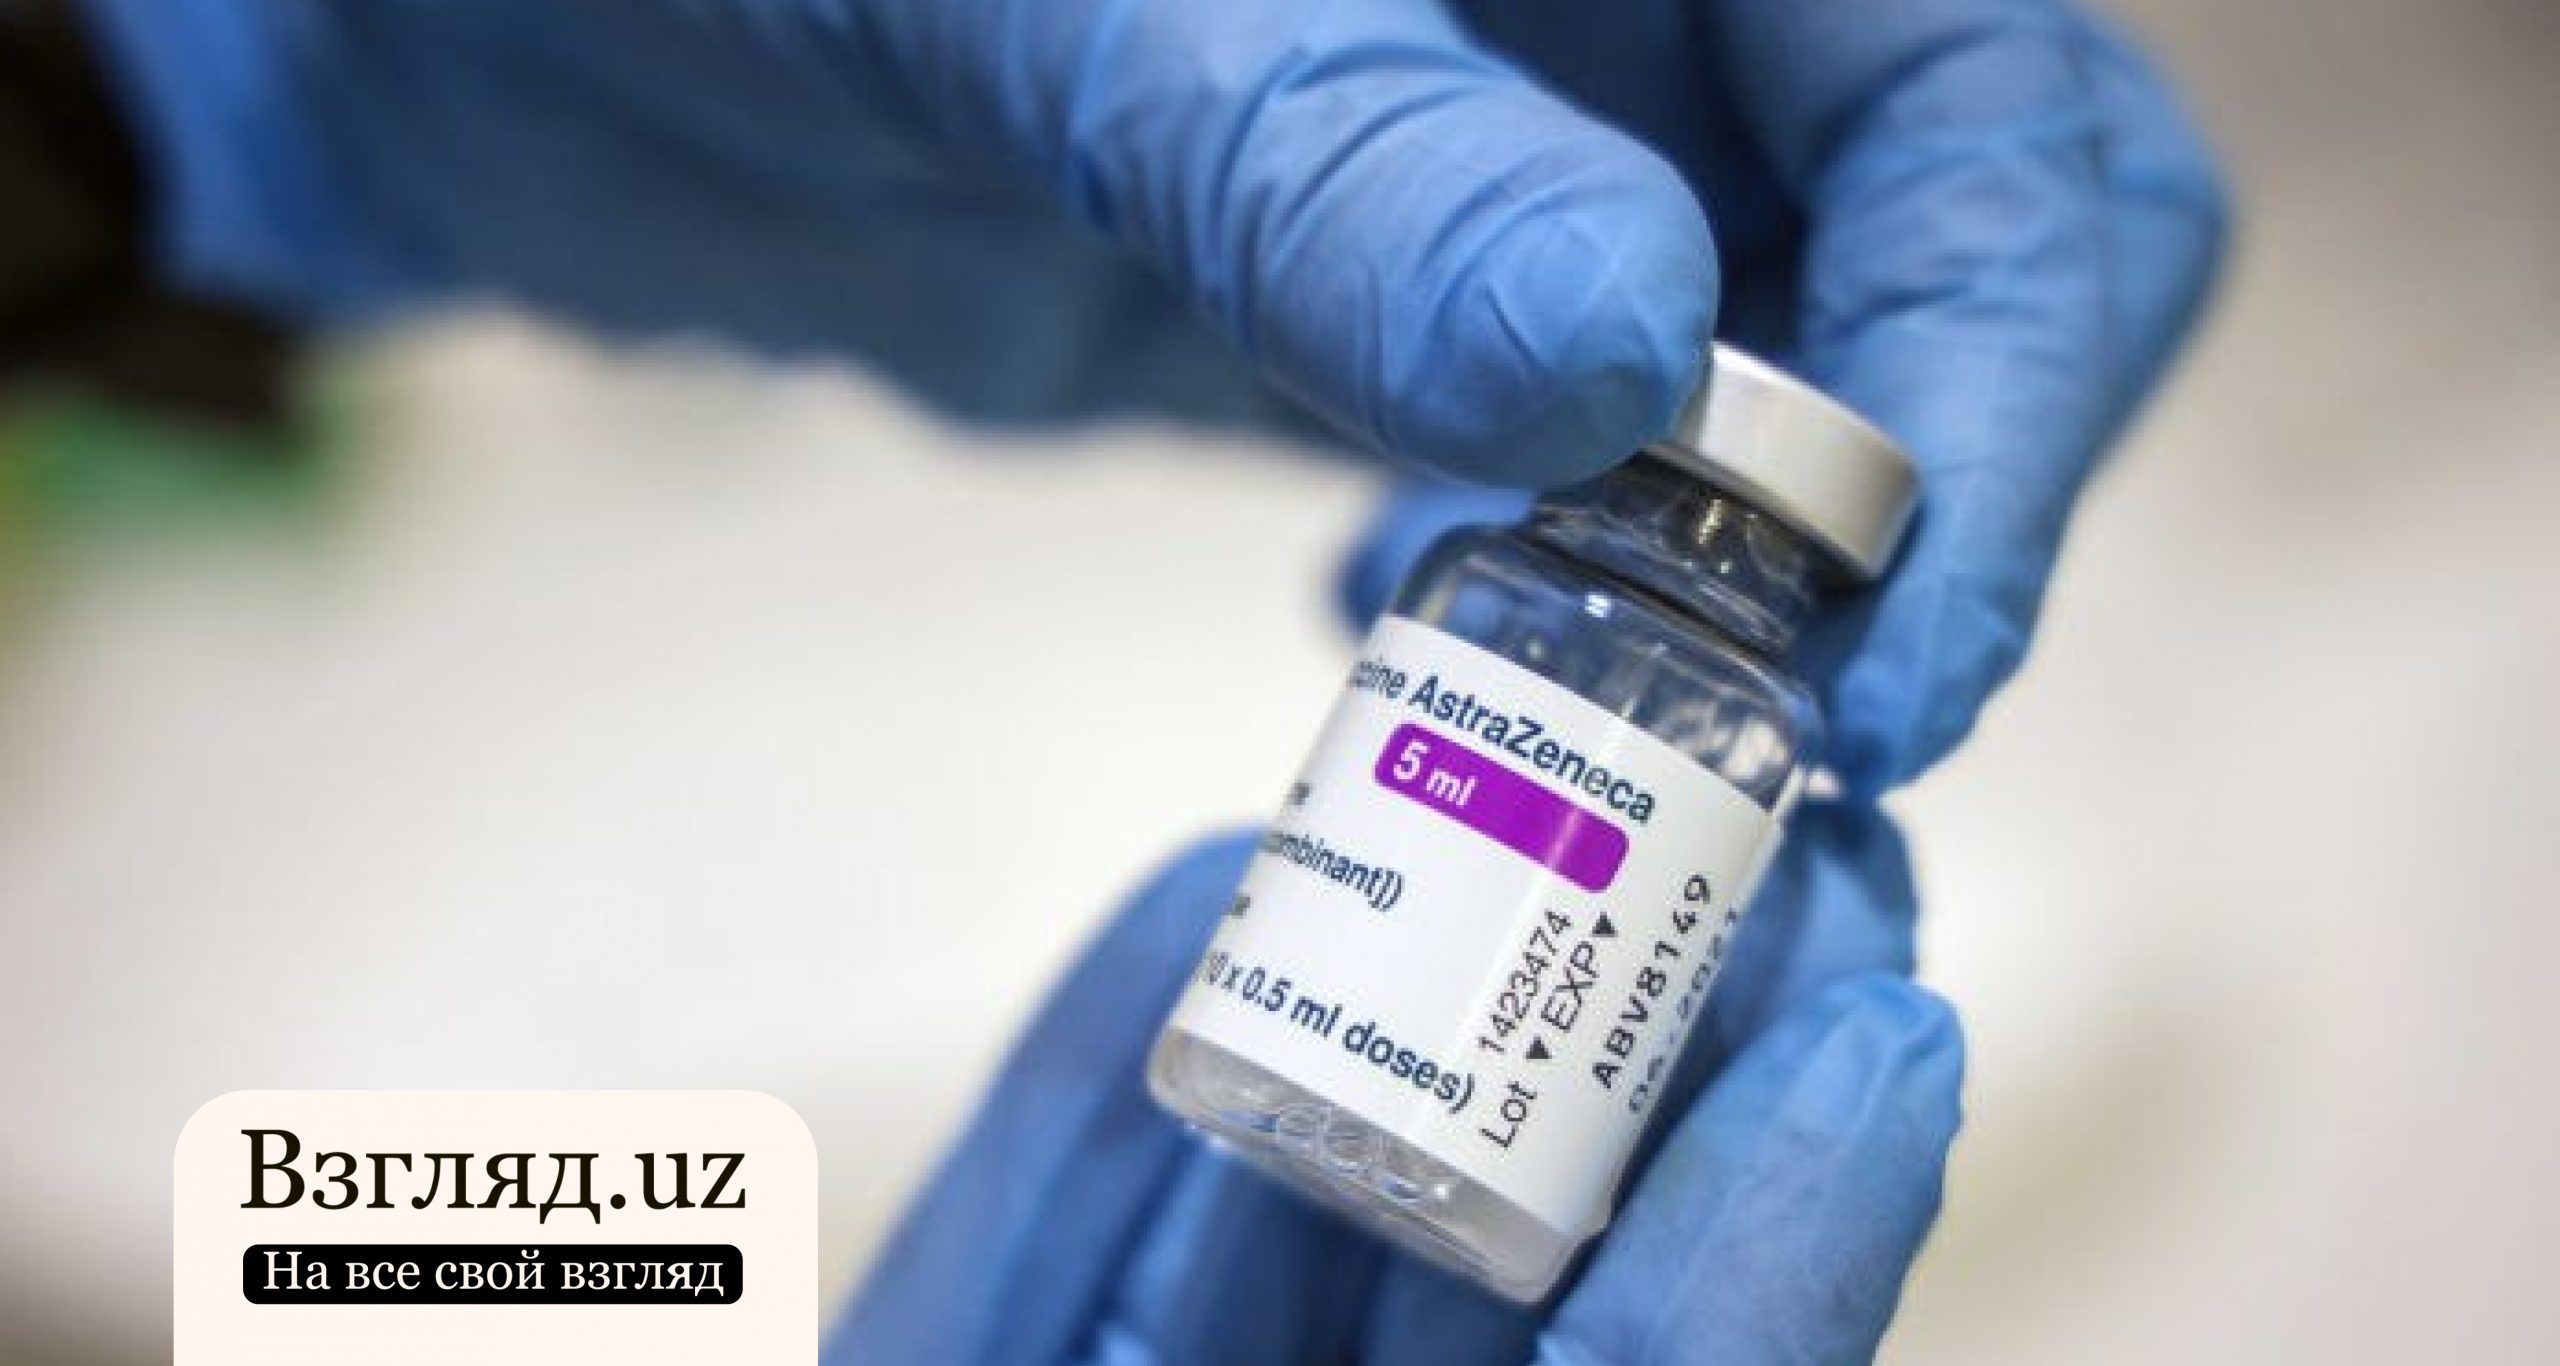 В Испании скончалась женщина после вакцинации препаратом AstraZeneca